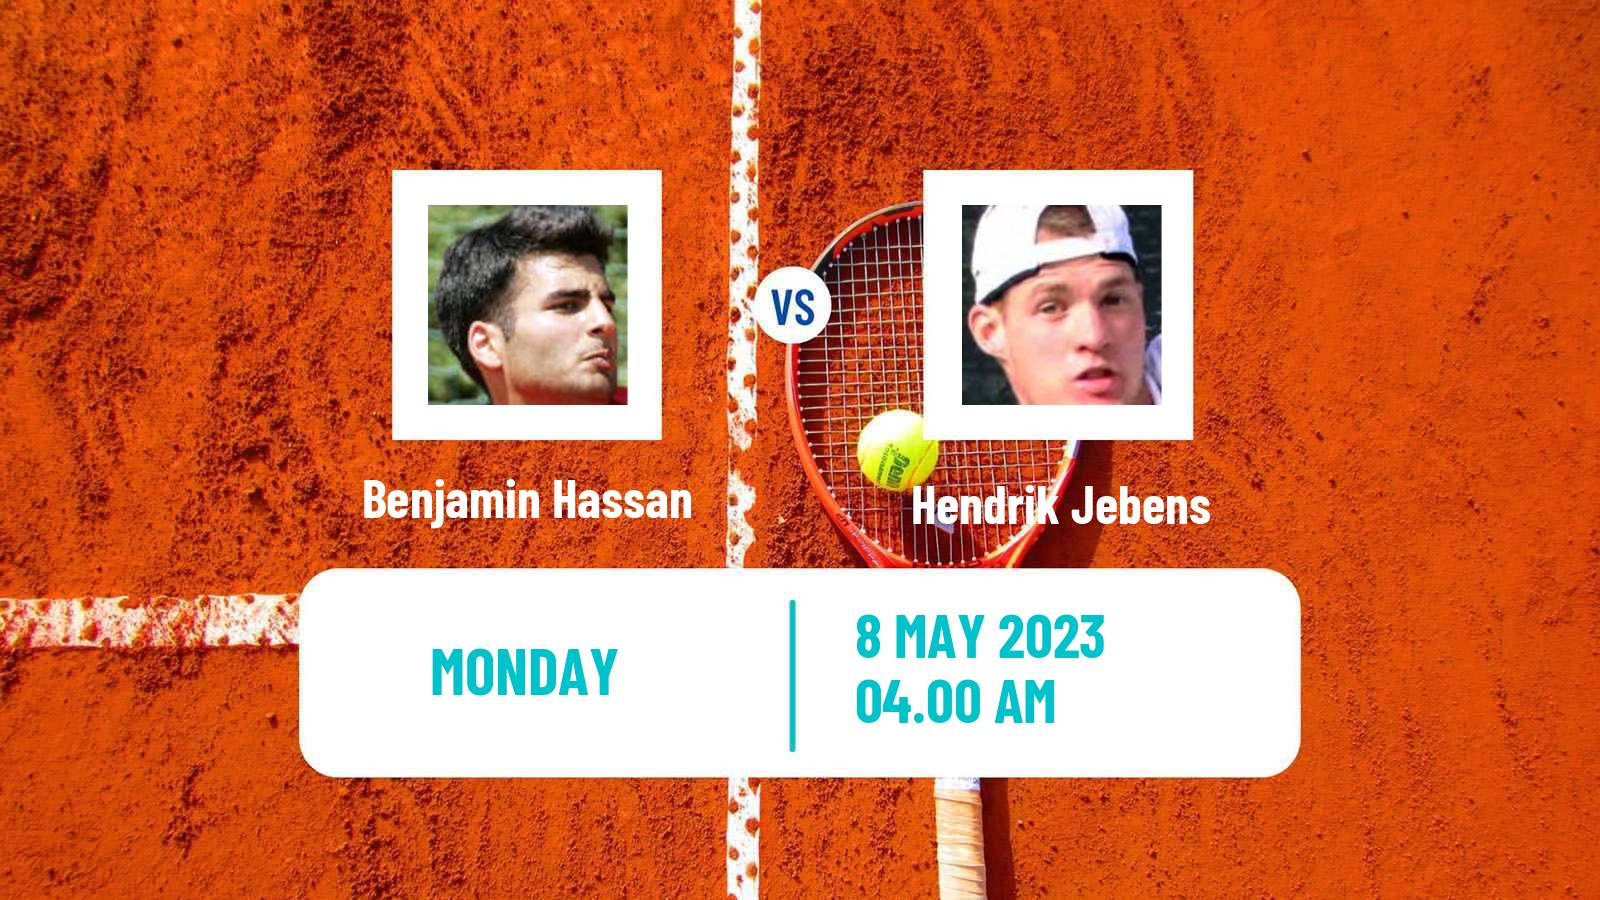 Tennis ATP Challenger Benjamin Hassan - Hendrik Jebens